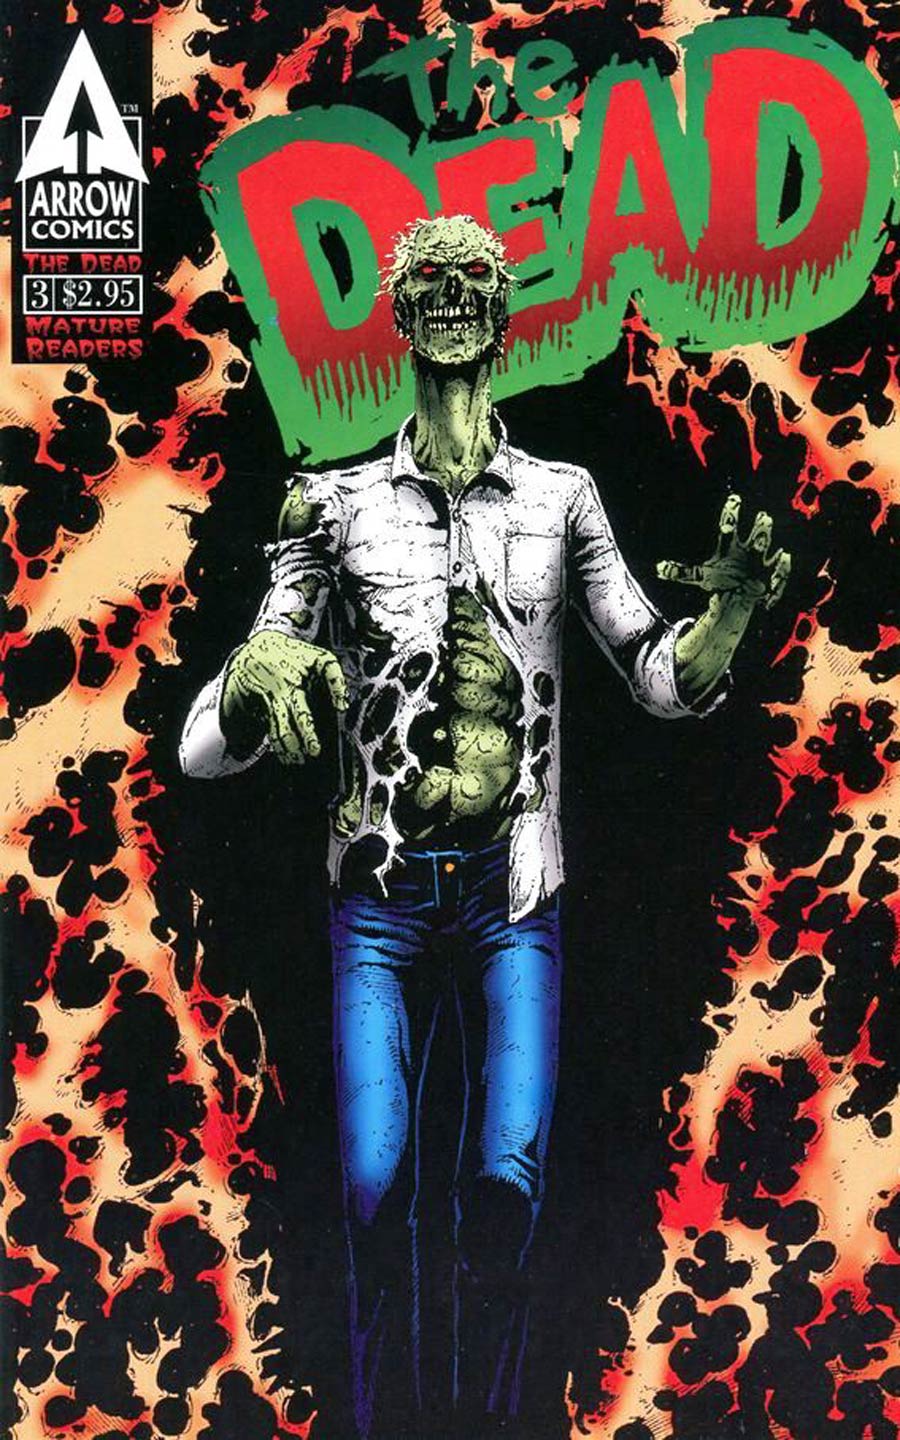 Dead (Arrow Comics) Vol 2 #3